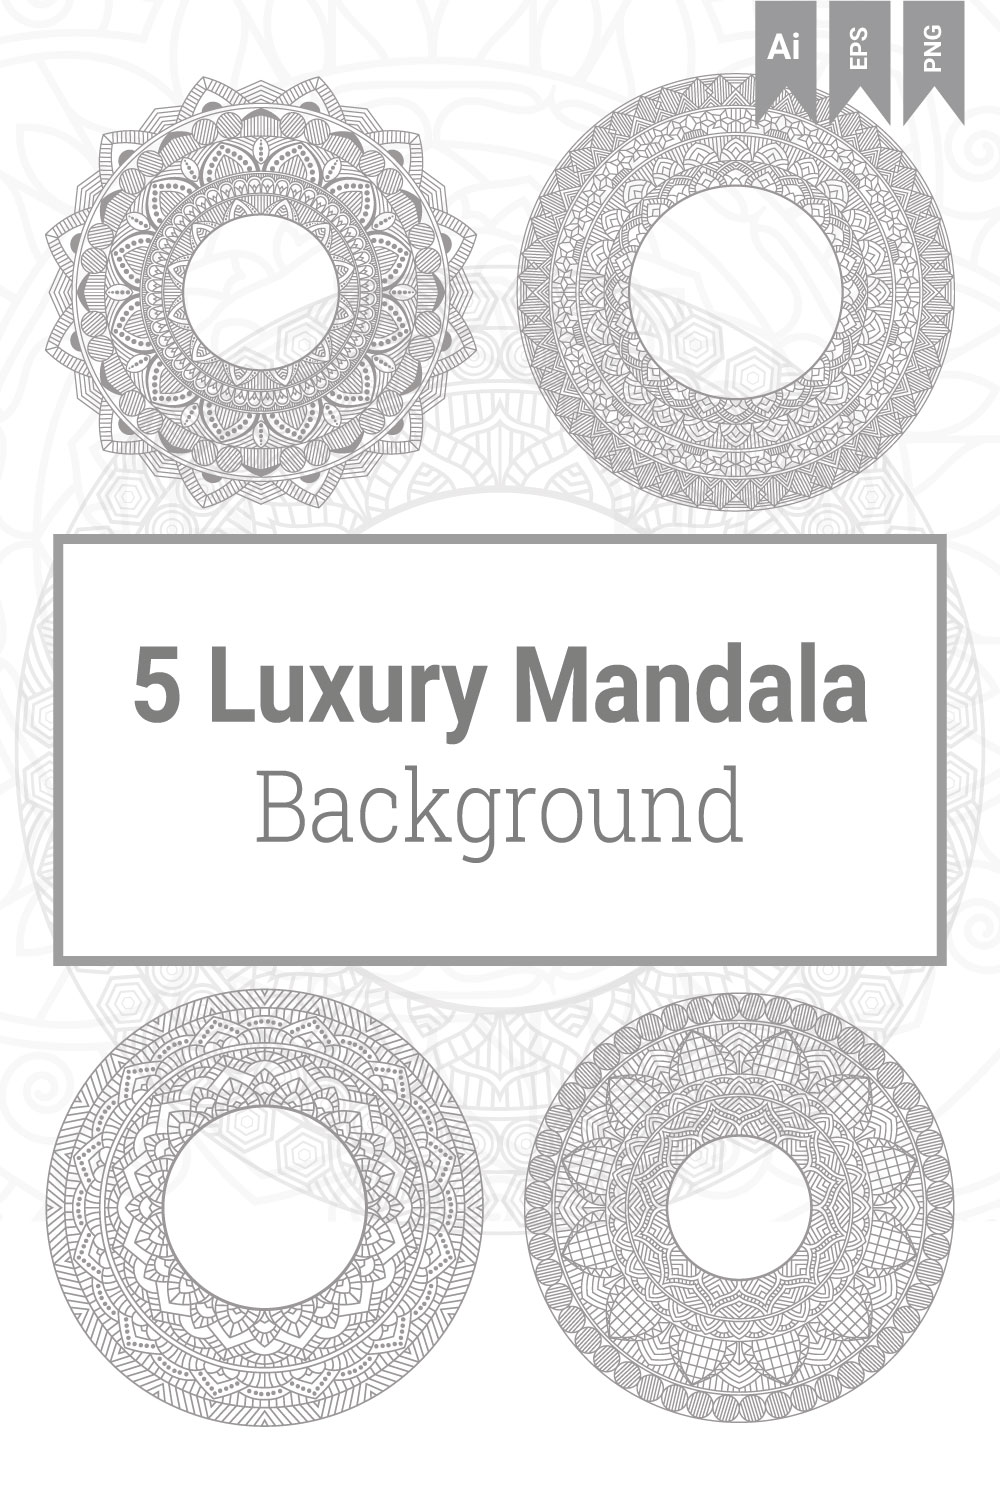 5 Luxury Mandala Background Bundle pinterest image.